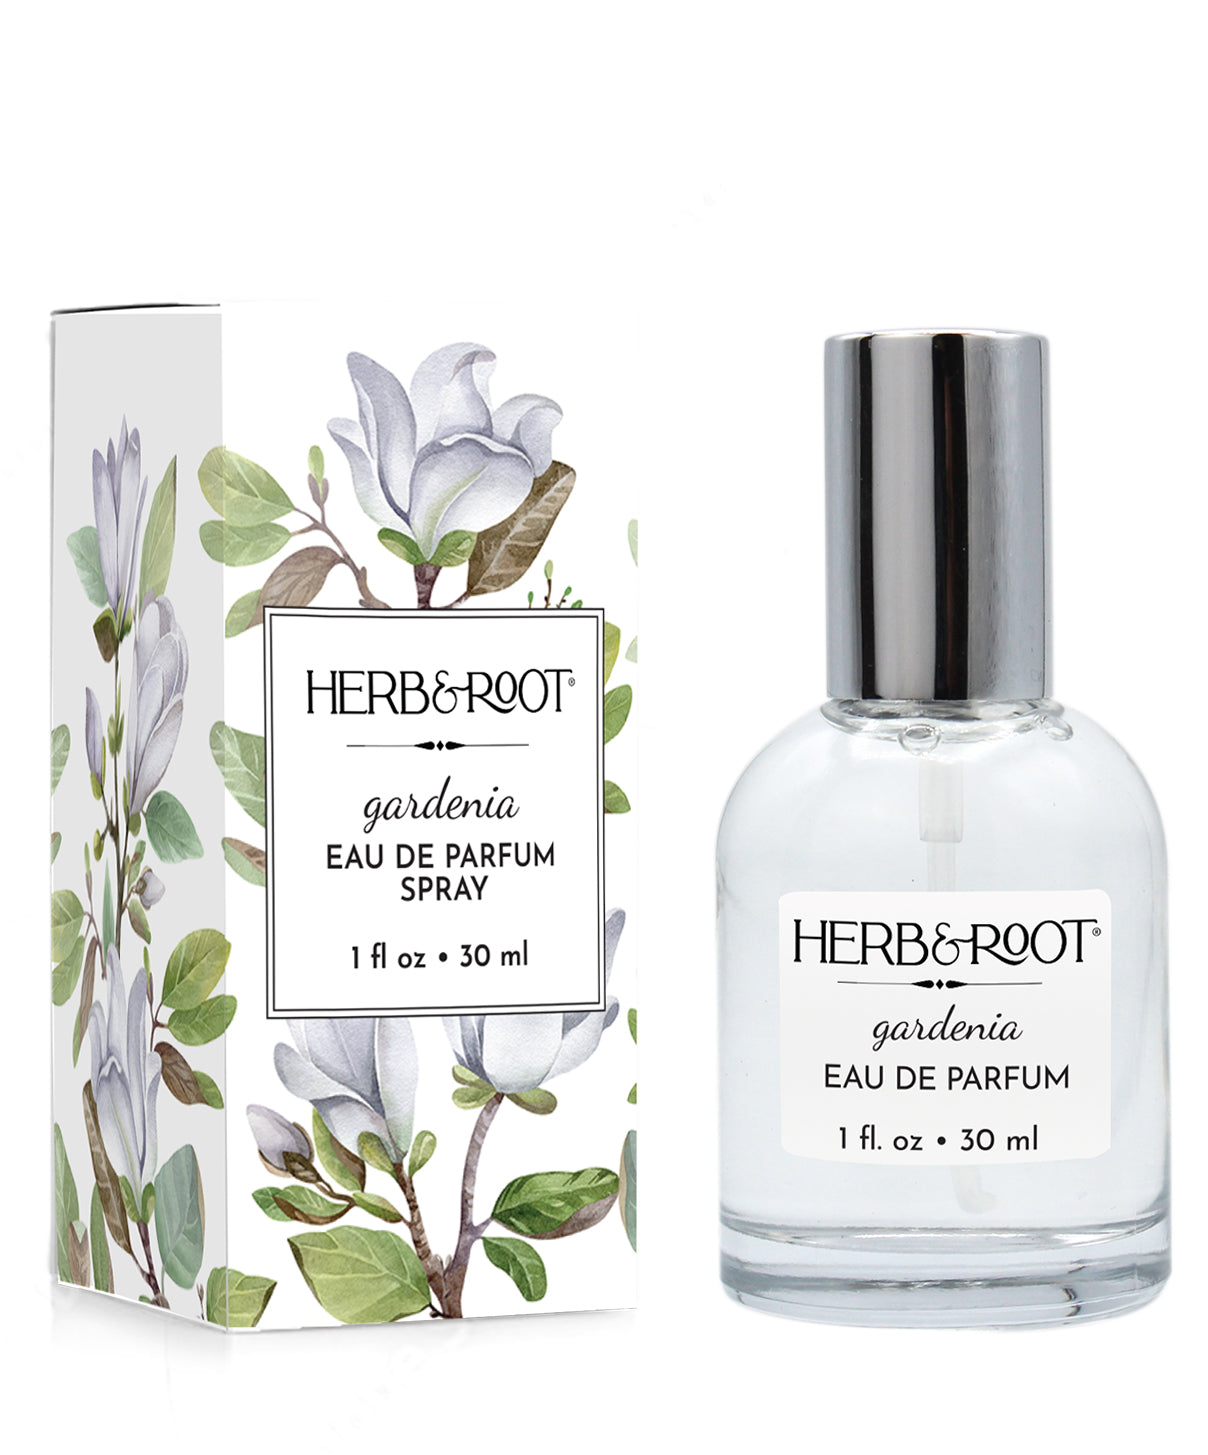 Herb & Root Eau de Parfum Spray, Gardenia - 1 fl oz